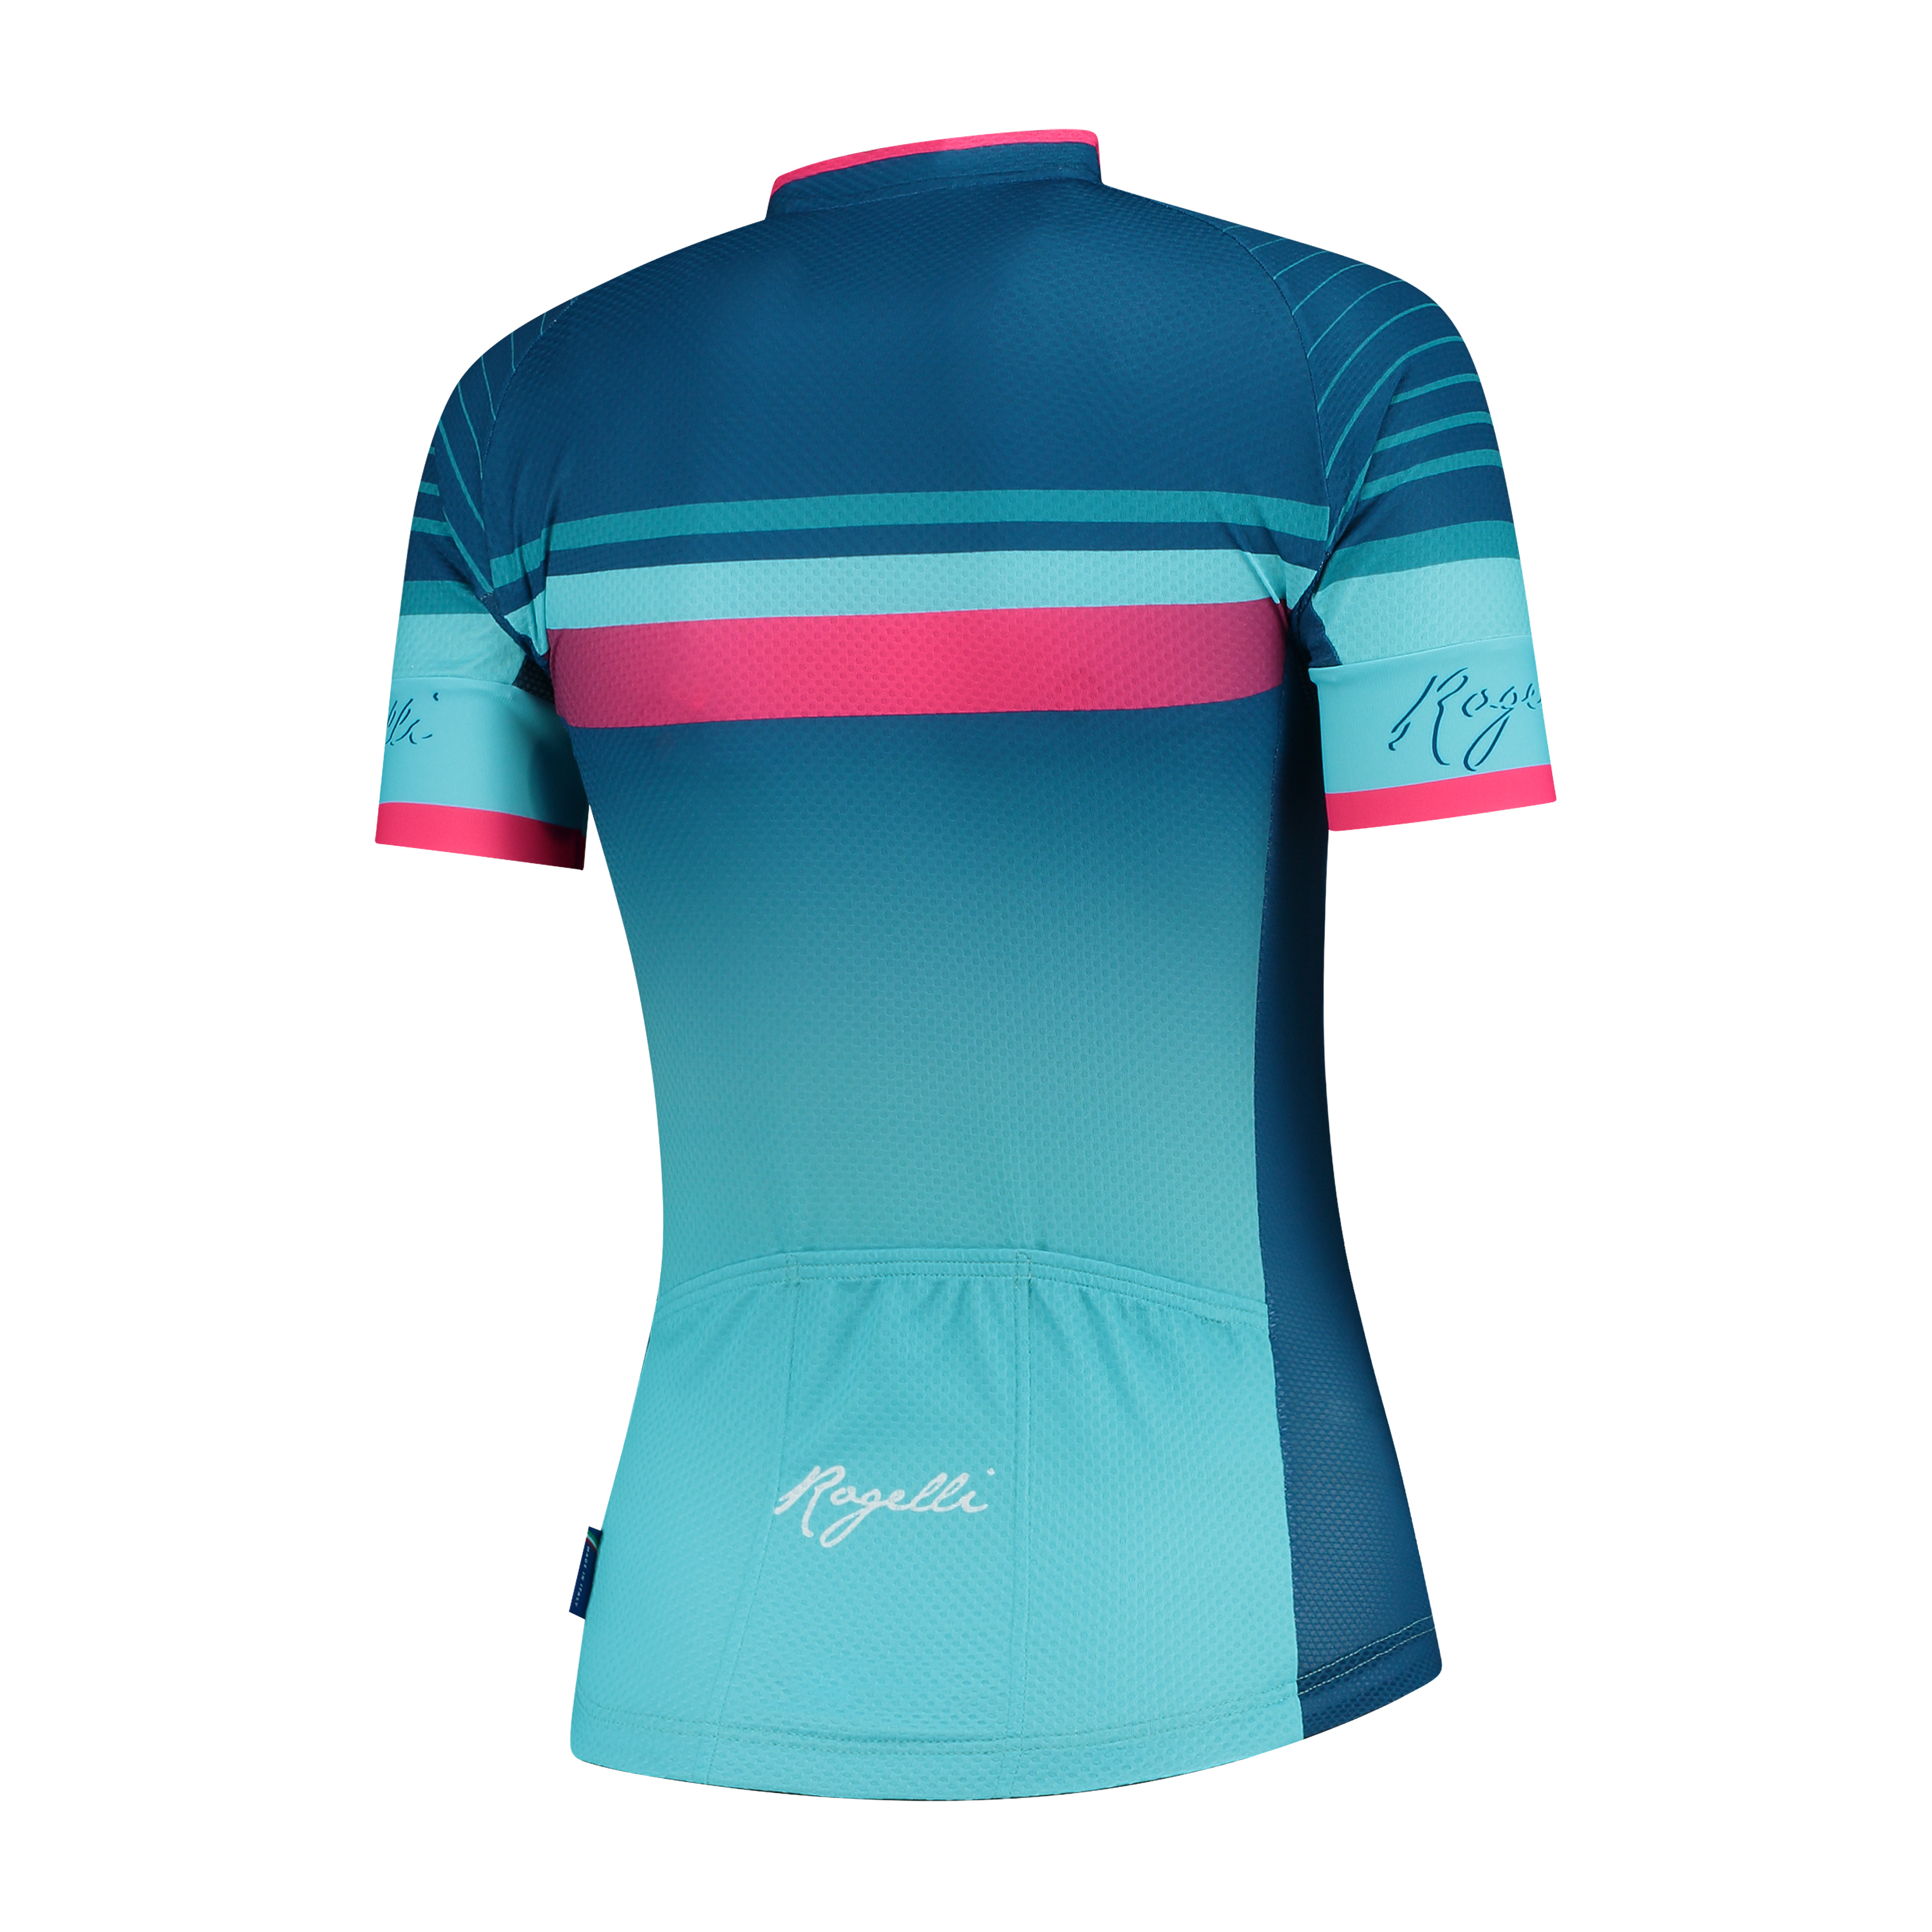 2 Delig Dames fietsset Impress shirt + broek Blauw/roze